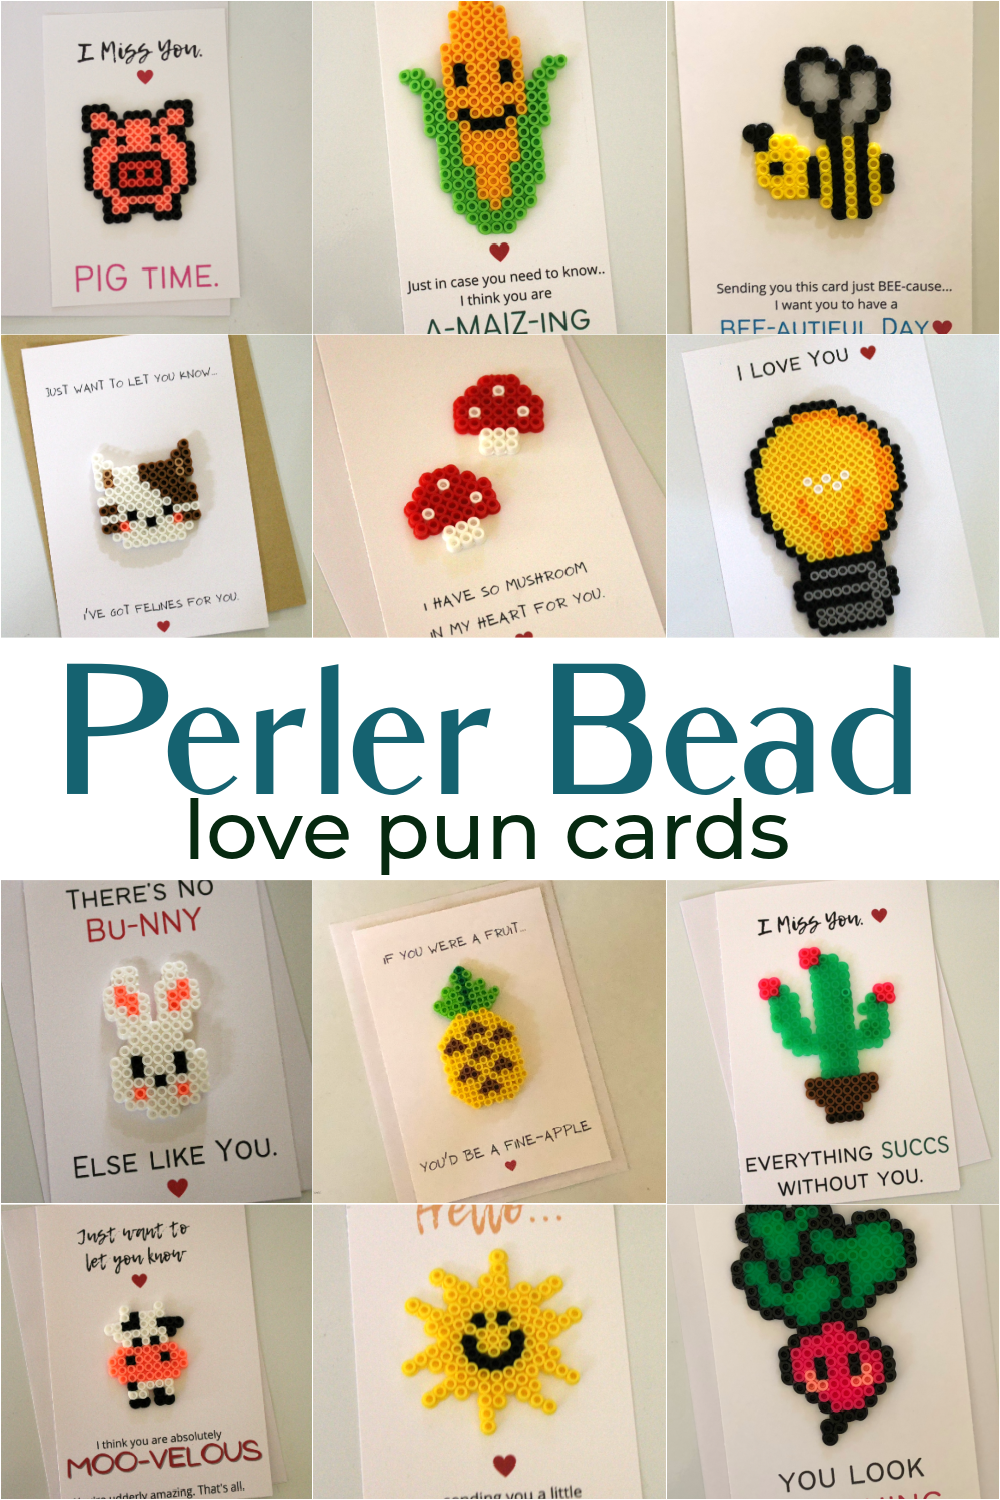 <span itemprop="name">Perler Bead Love Pun Cards</span>